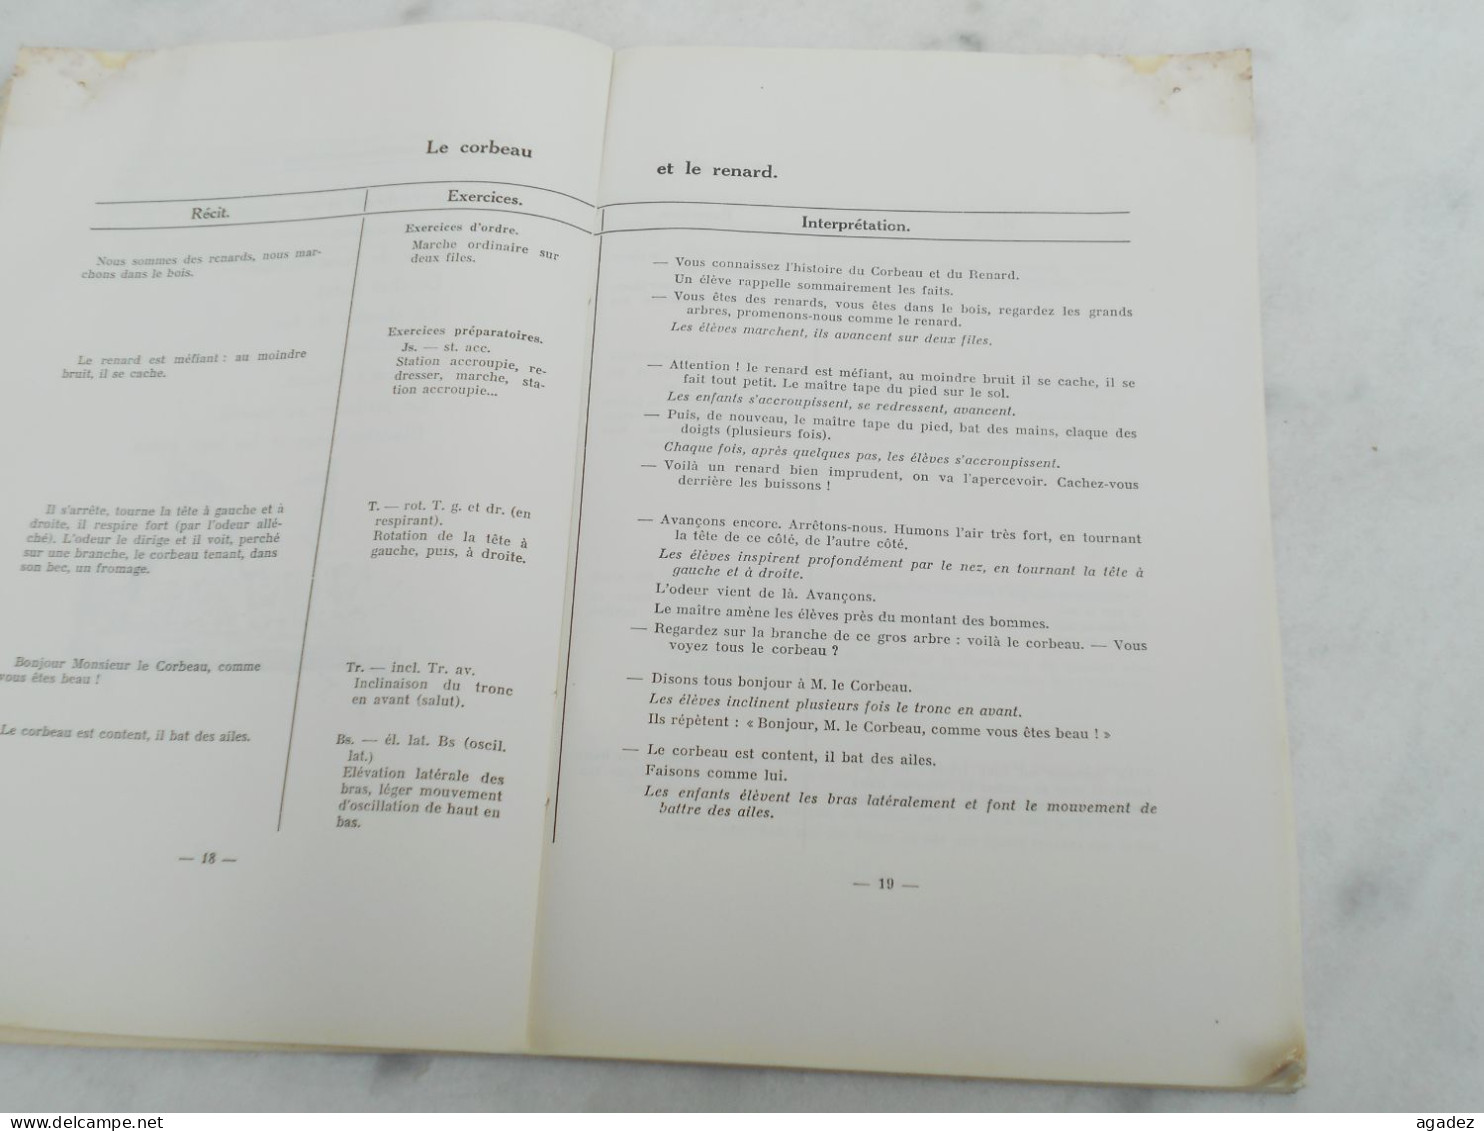 Ancien Livre Scolaire "La Gymnastique à L'ecole Primaire " 1950 Lucien Ghys Verviers - Sport